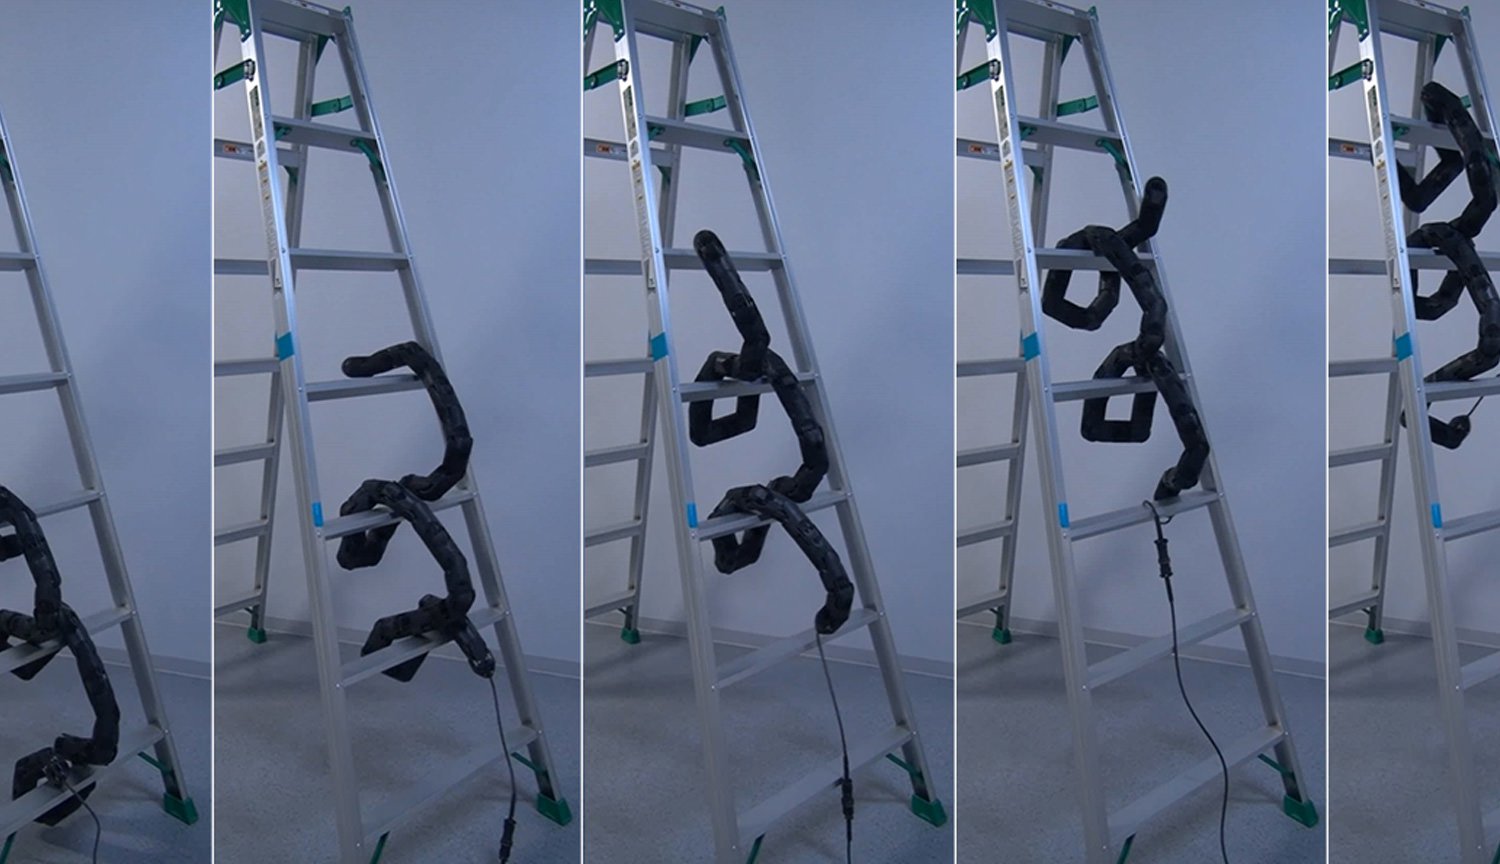 El robot-serpiente aprendido a subir por la escalera